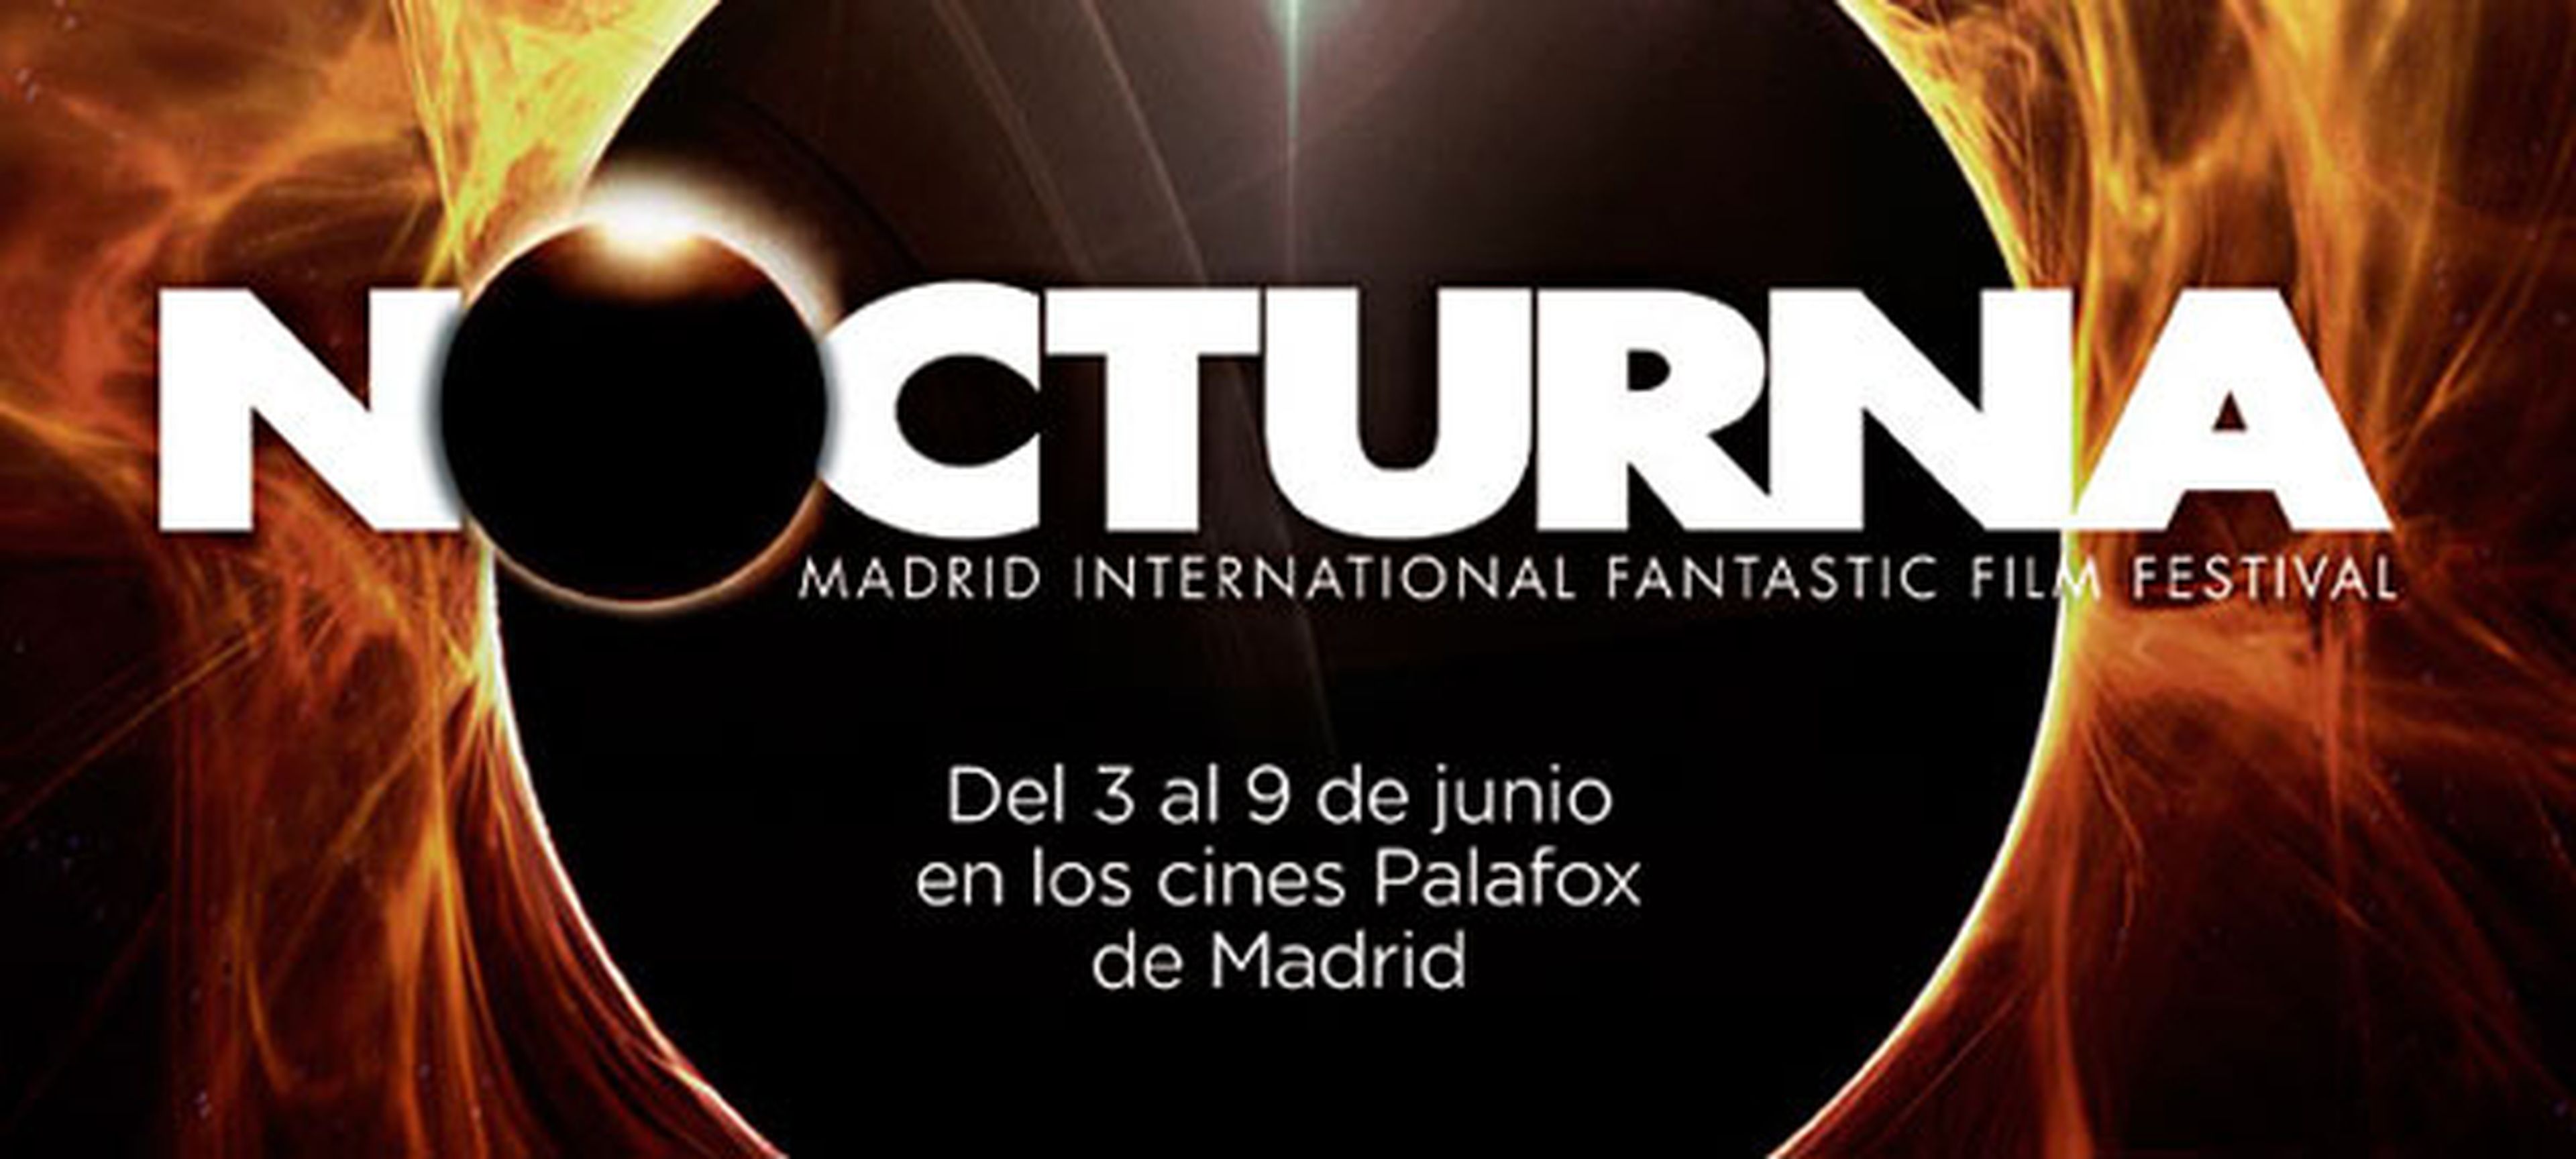 Sección oficial del Festival de Cine Fantástico Nocturna 2013